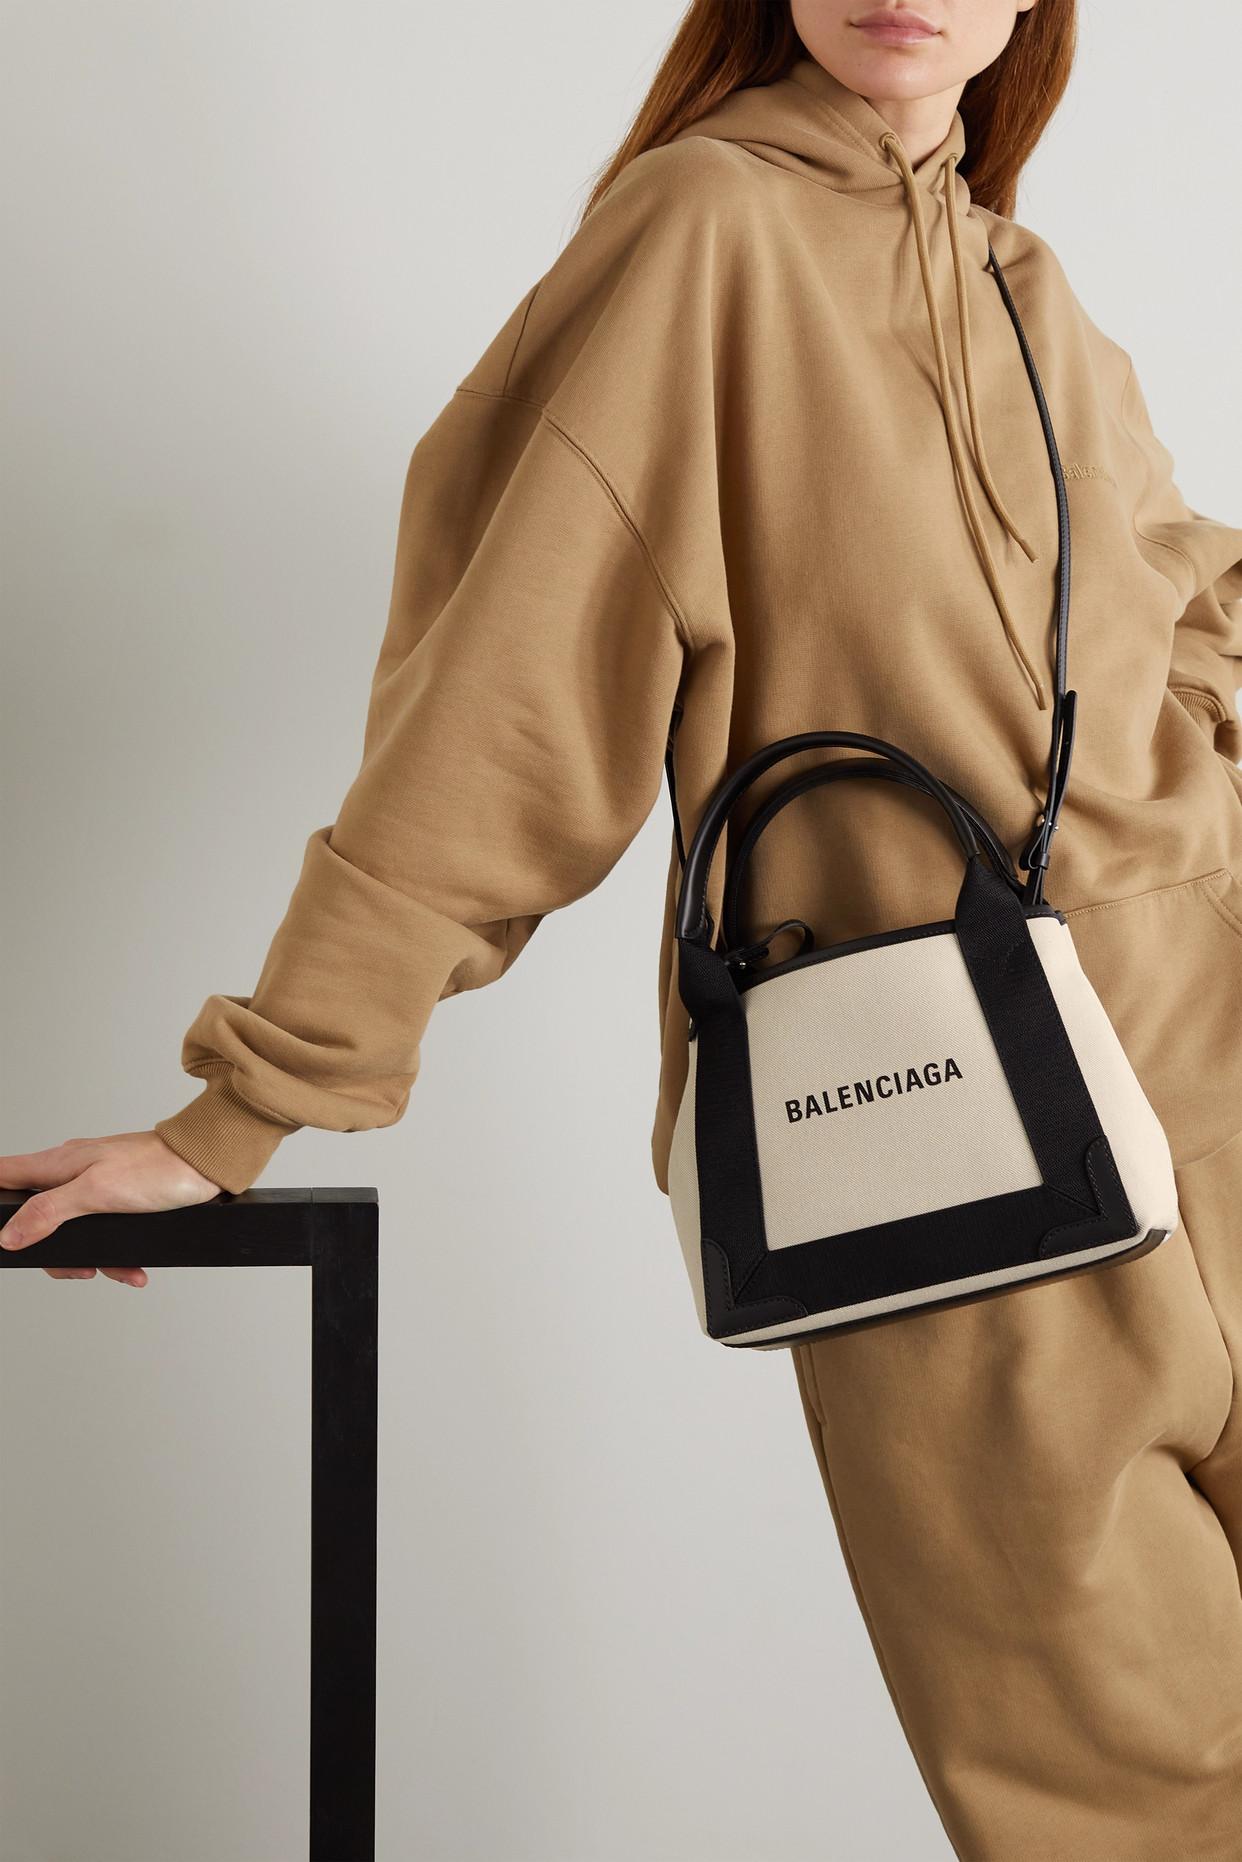 Balenciaga giảm giá túi sang trọng  Timepeaks